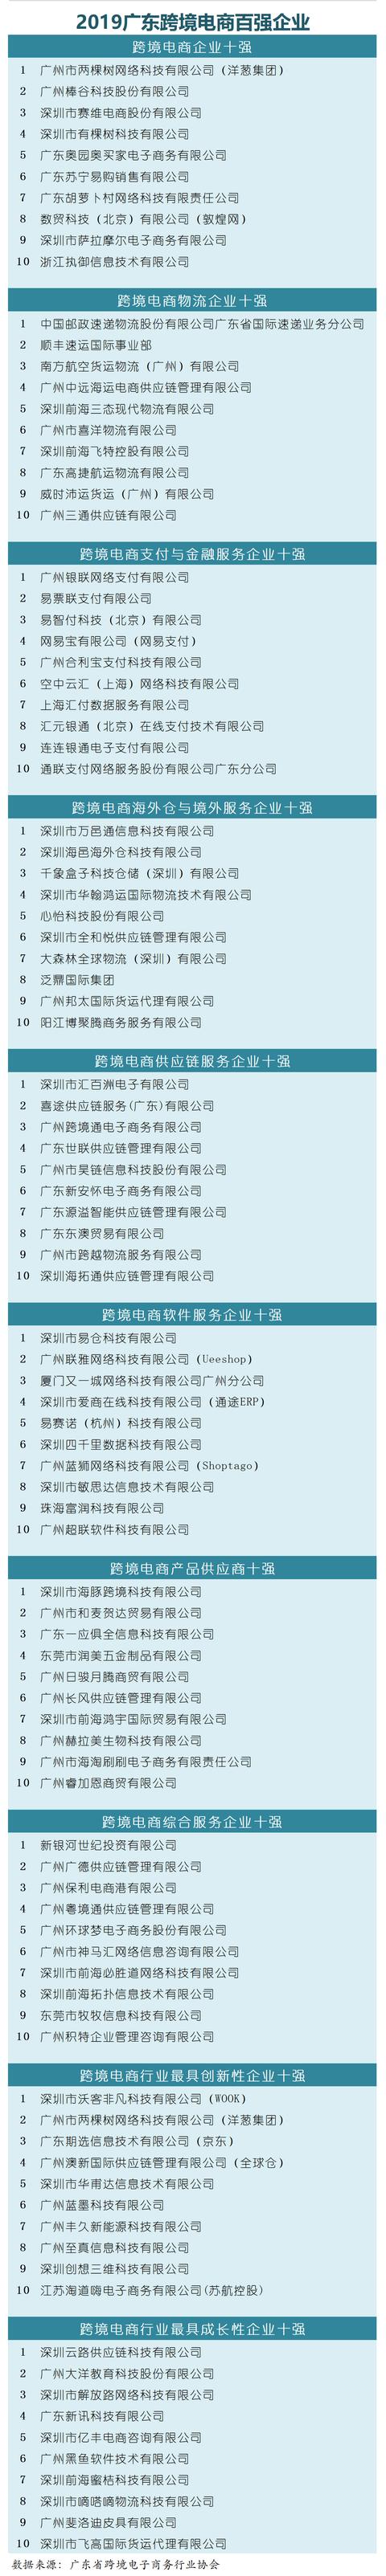 广东跨境电商出口平台排名「跨境电商新风口」